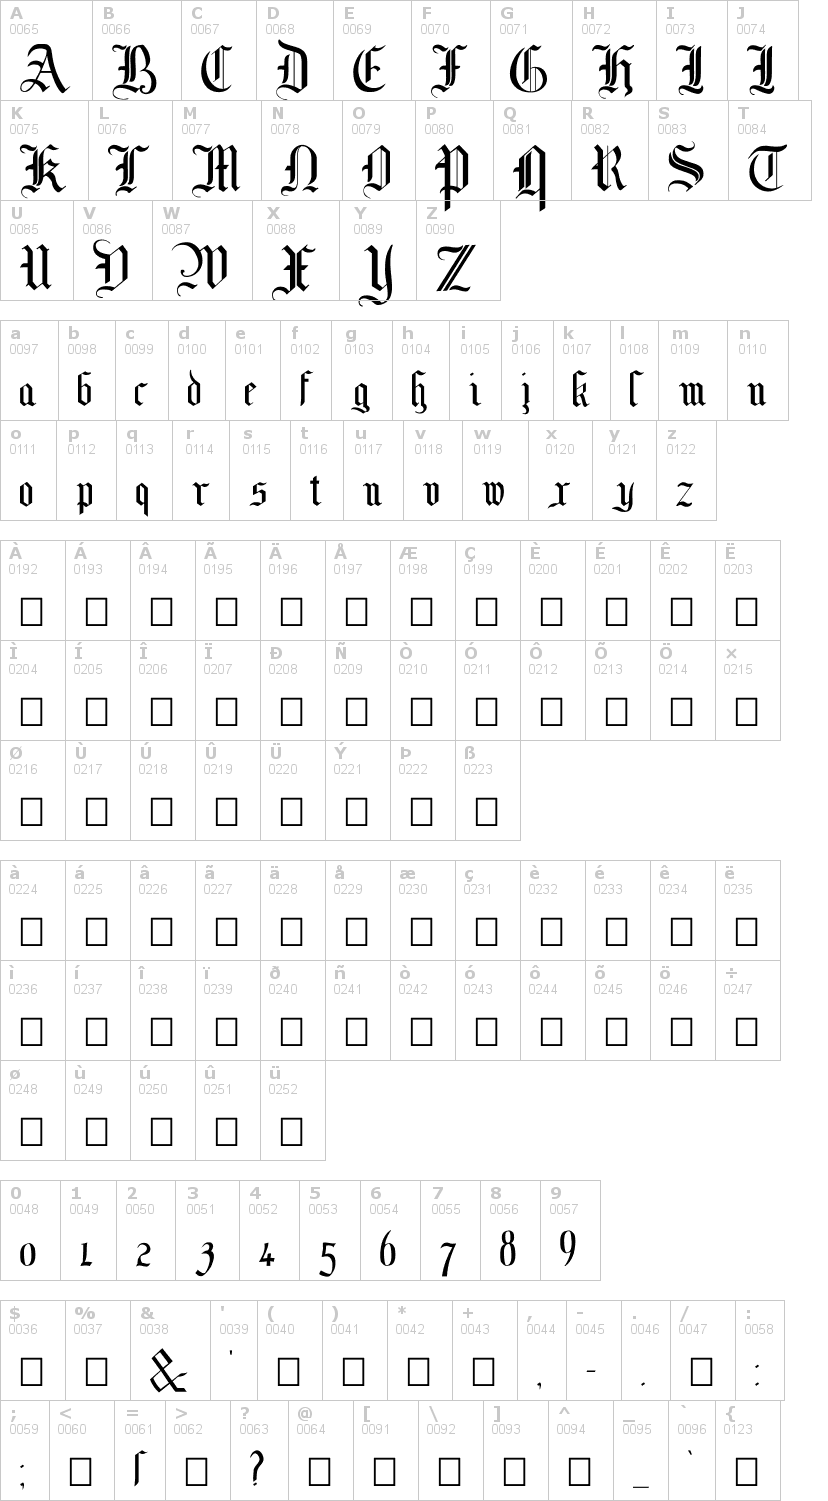 Lettere dell'alfabeto del font mottisfontno1 con le quali è possibile realizzare adesivi prespaziati